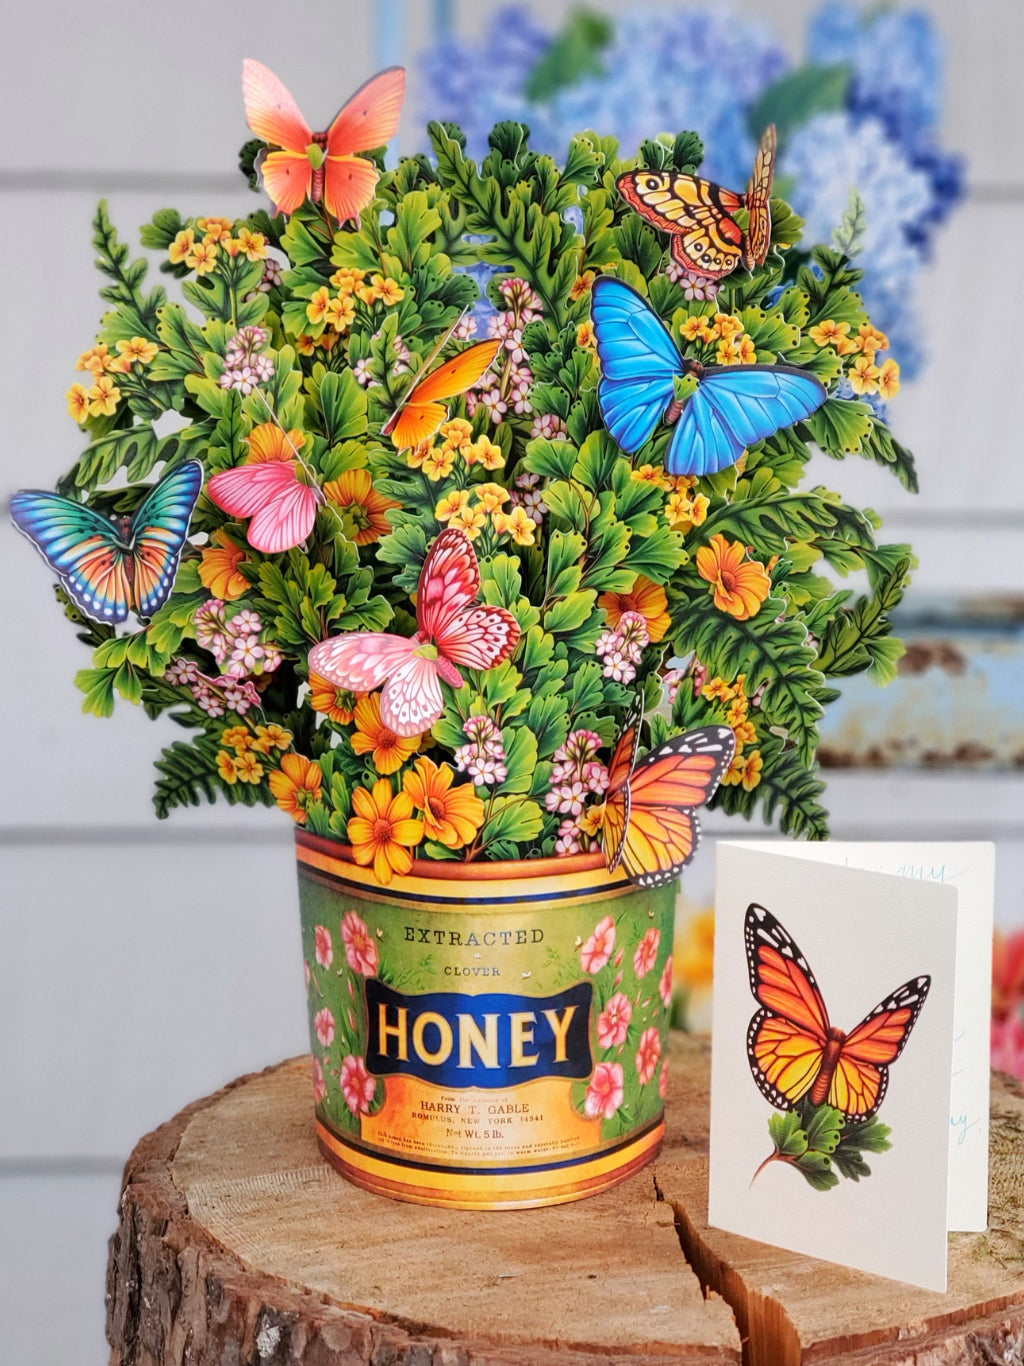 Pop Up Flower Bouquet Greeting Card - Butterflies & Buttercups